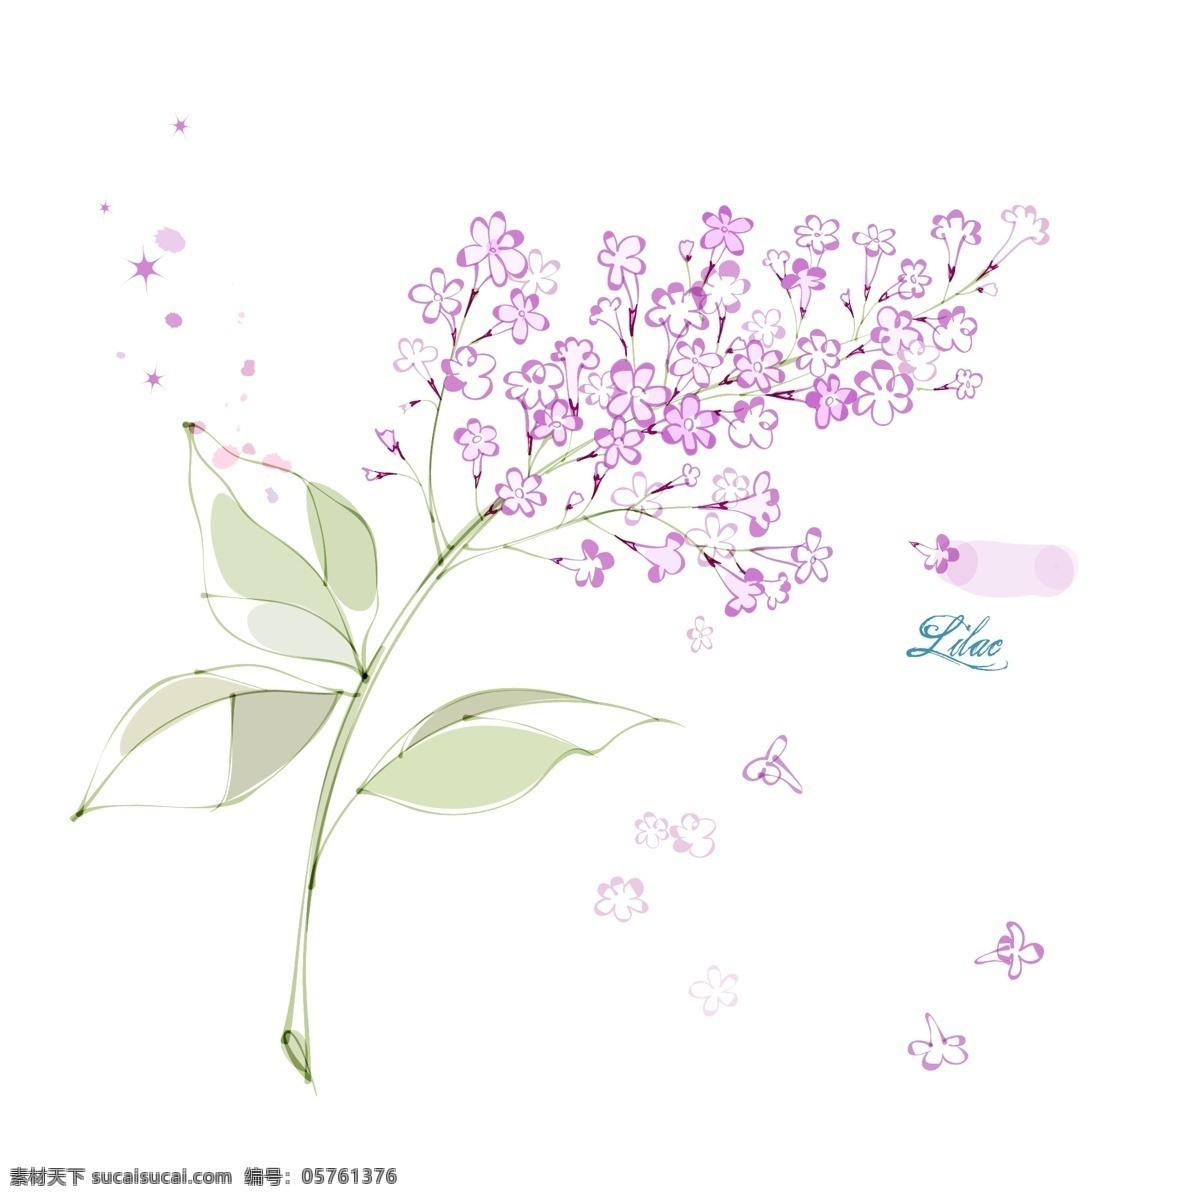 紫丁香 花朵 花卉 手绘 素描 矢量图 花纹花边